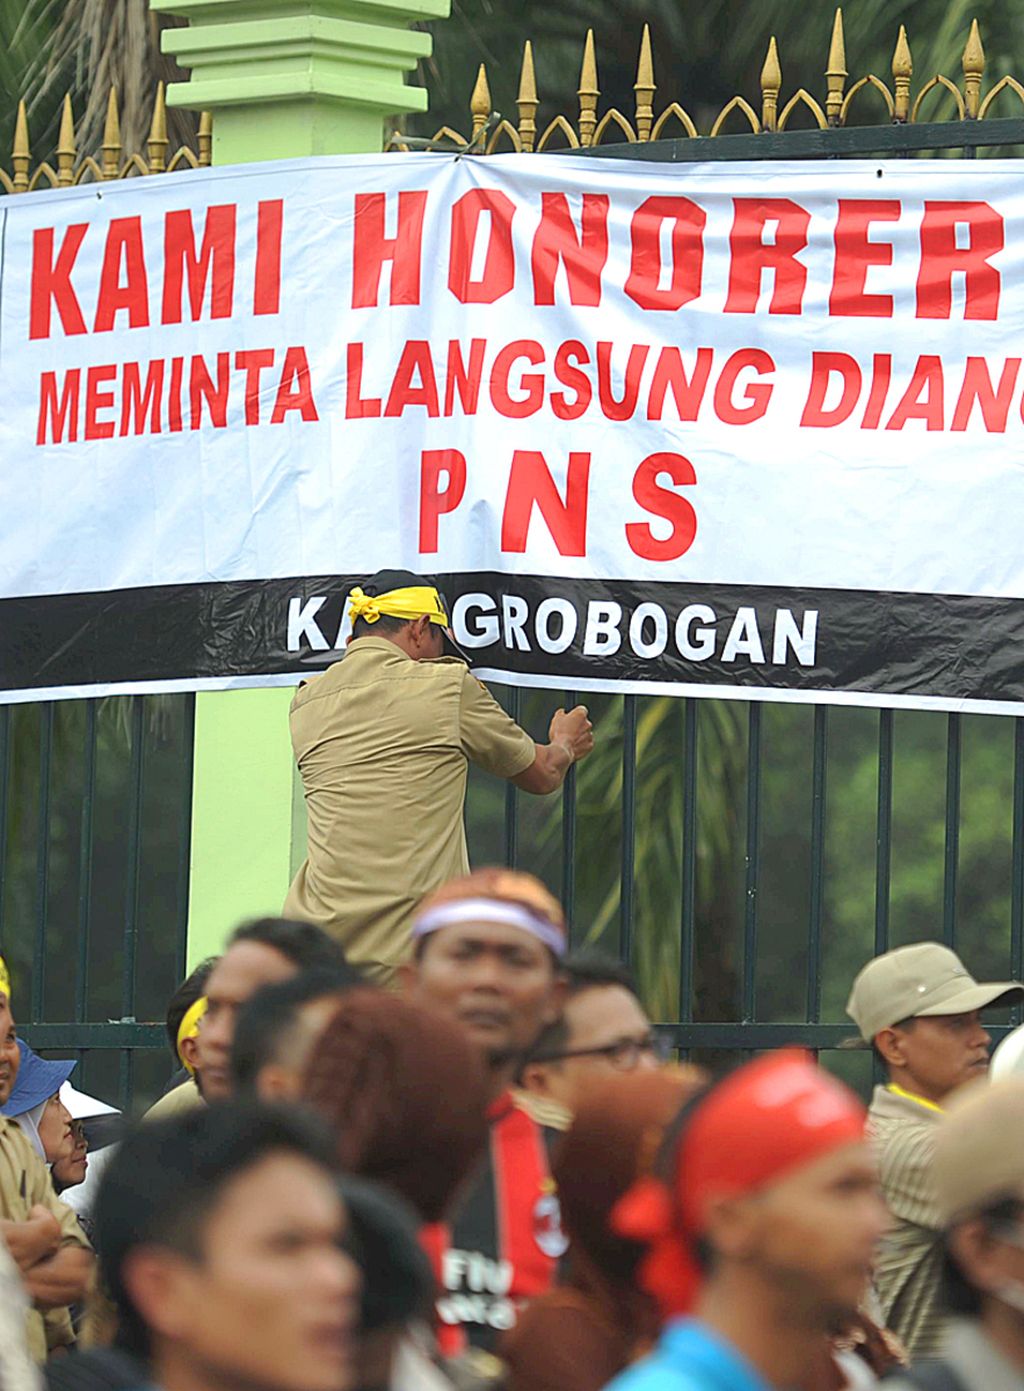 Aksi Tenaga Honorer - Tenaga honorer dari berbagai instansi di seluruh Indonesia kembali berunjuk rasa di depan gedung DPR/MPR Jakarta, Jumat (14/3). Mereka menuntuk kepada anggota dewan dan pemerintah untuk memperjuangkan nasib mereka dengan mengangkat tenaga honorer menjadi pegawai negeri sipil atau PNS.